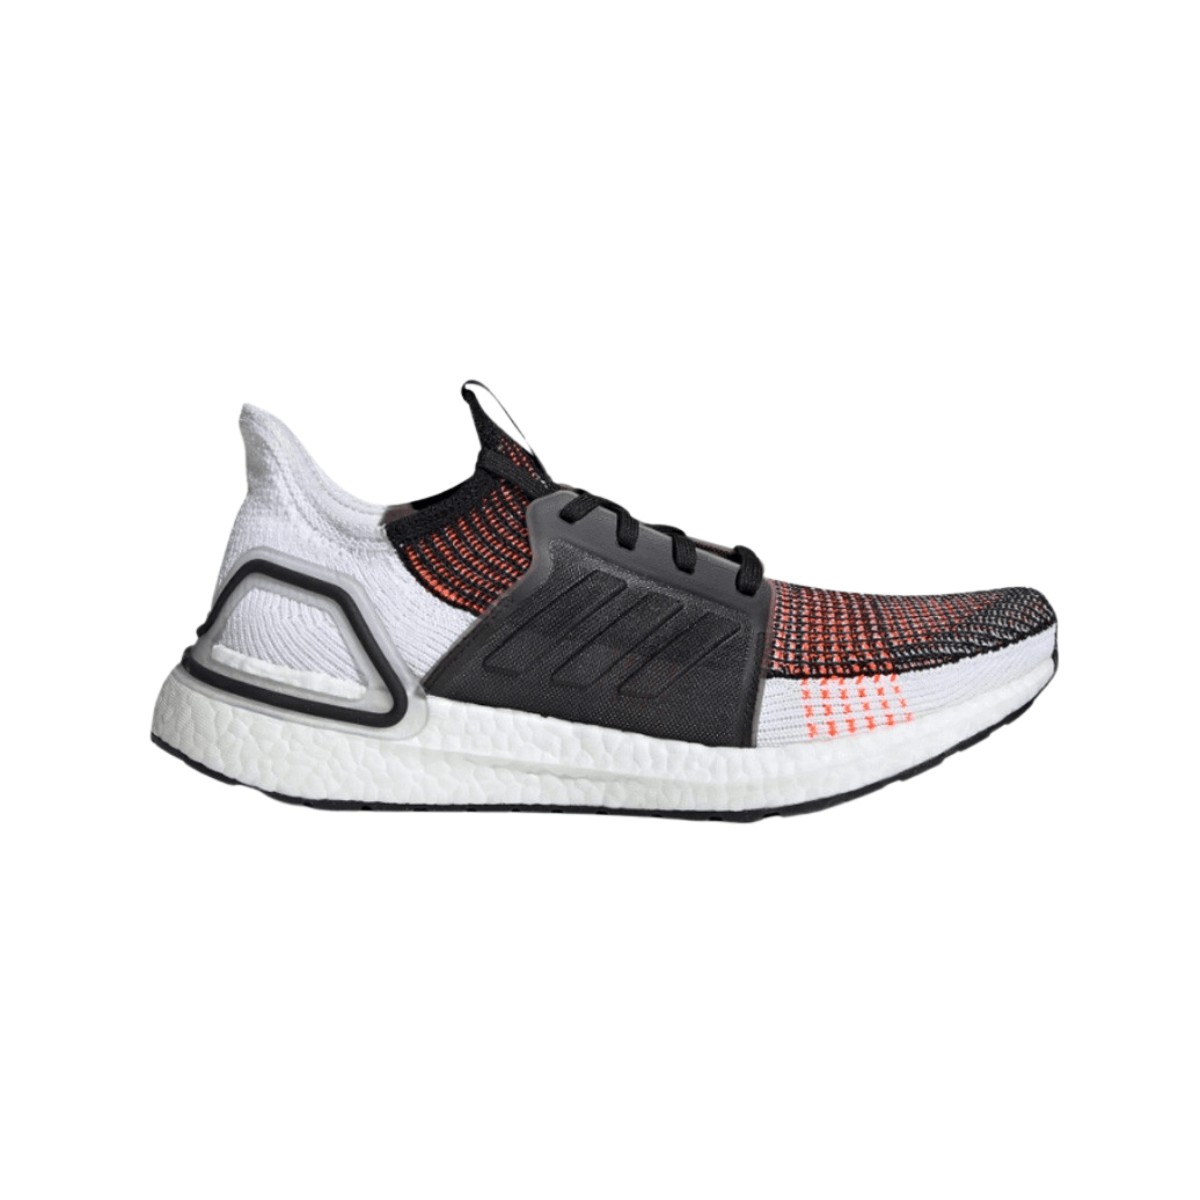 Chaussures de running web boost blanc noir homme - Adidas